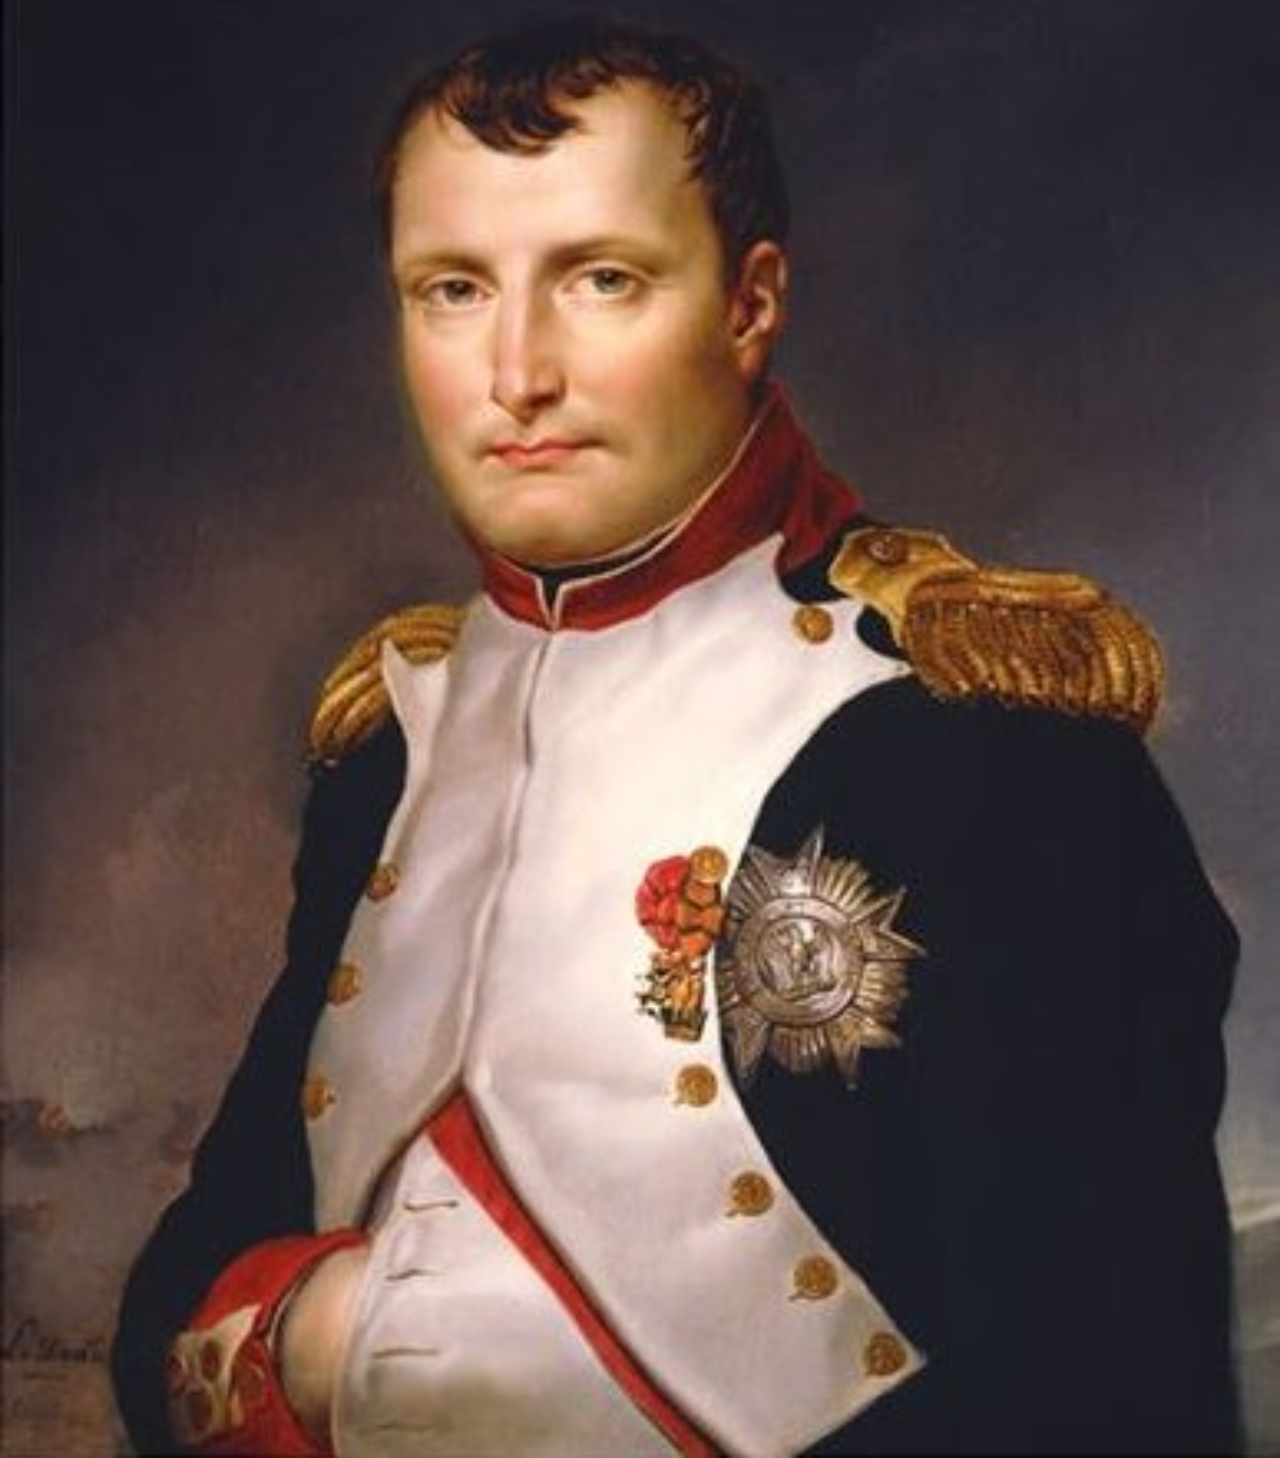 O antigo imperador francês Napoleão Bonaparte